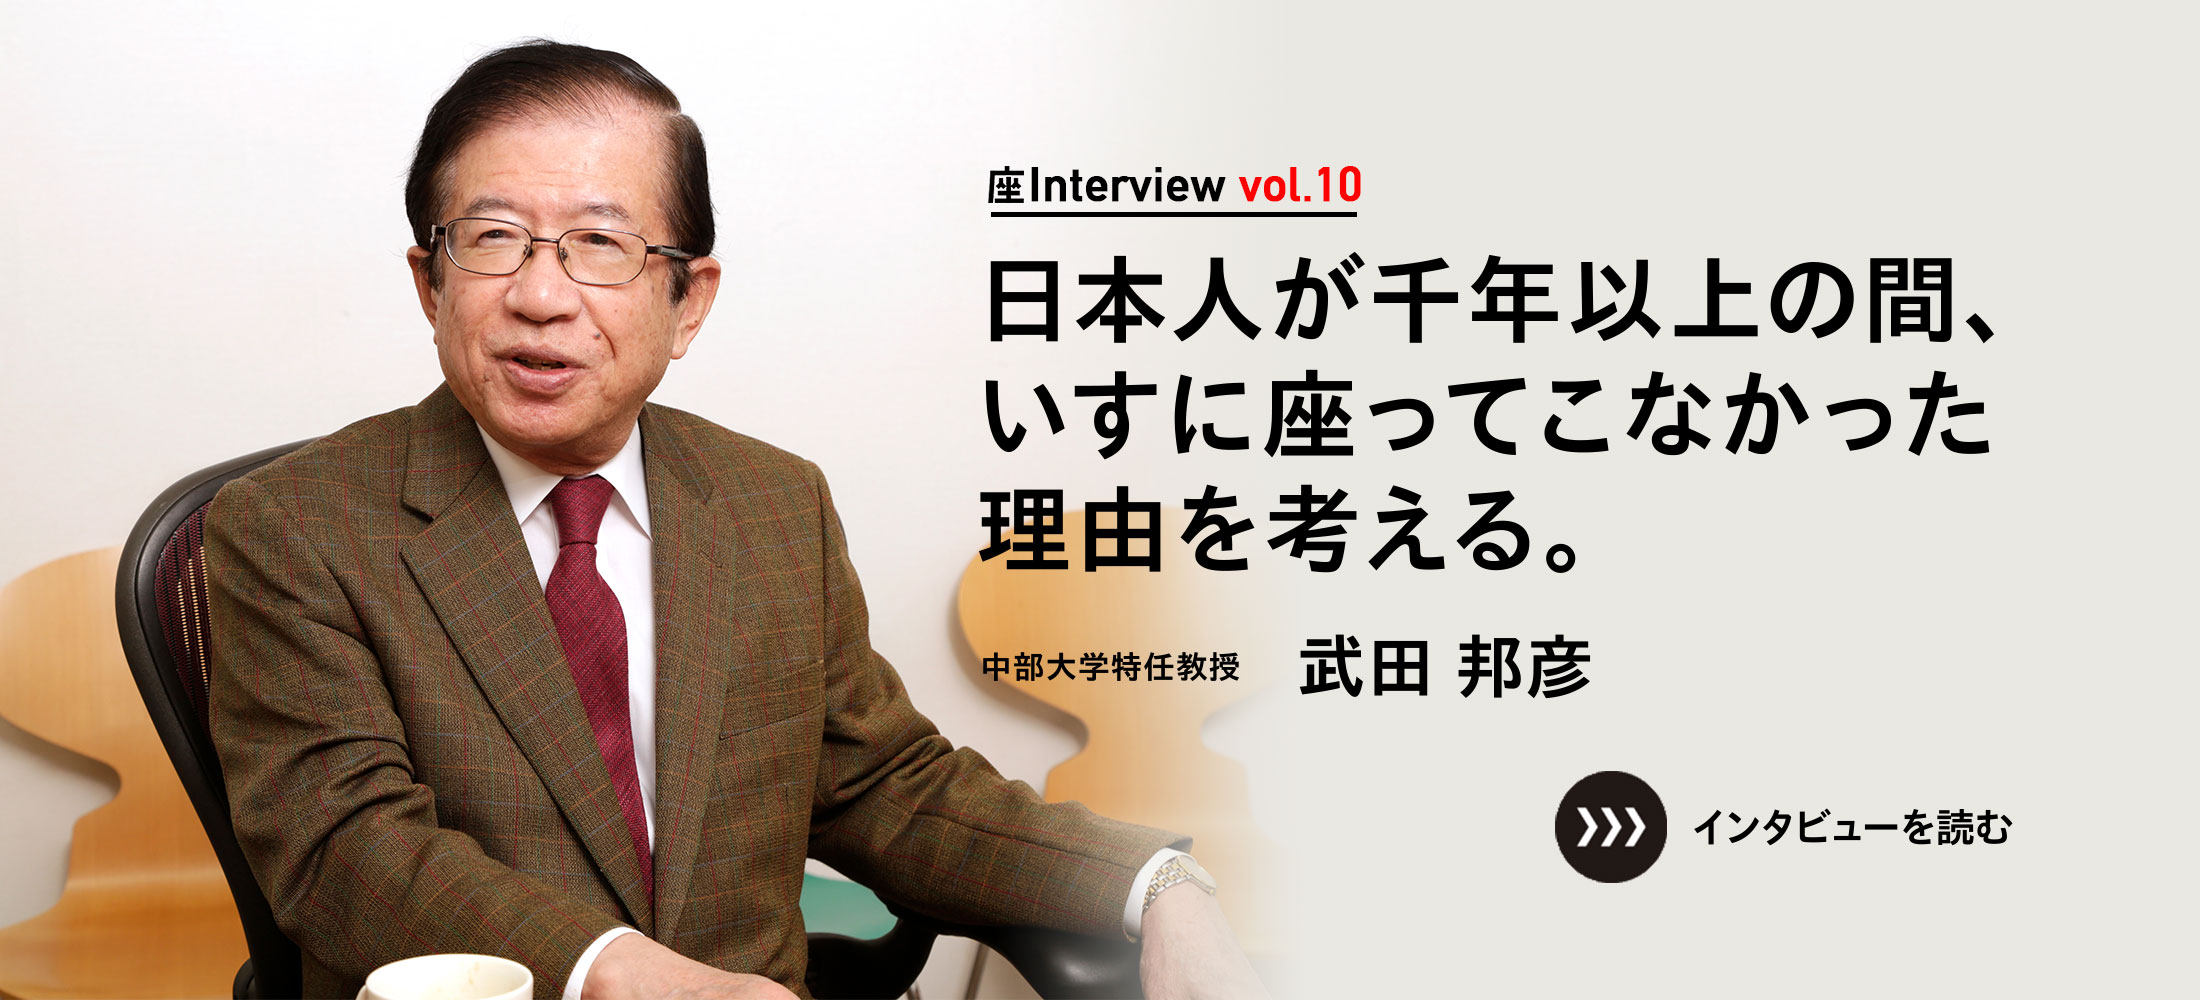 座Interview vol.10 「日本人が千年以上の間、いすに座ってこなかった理由を考える。」中部大学特任教授 武田 邦彦